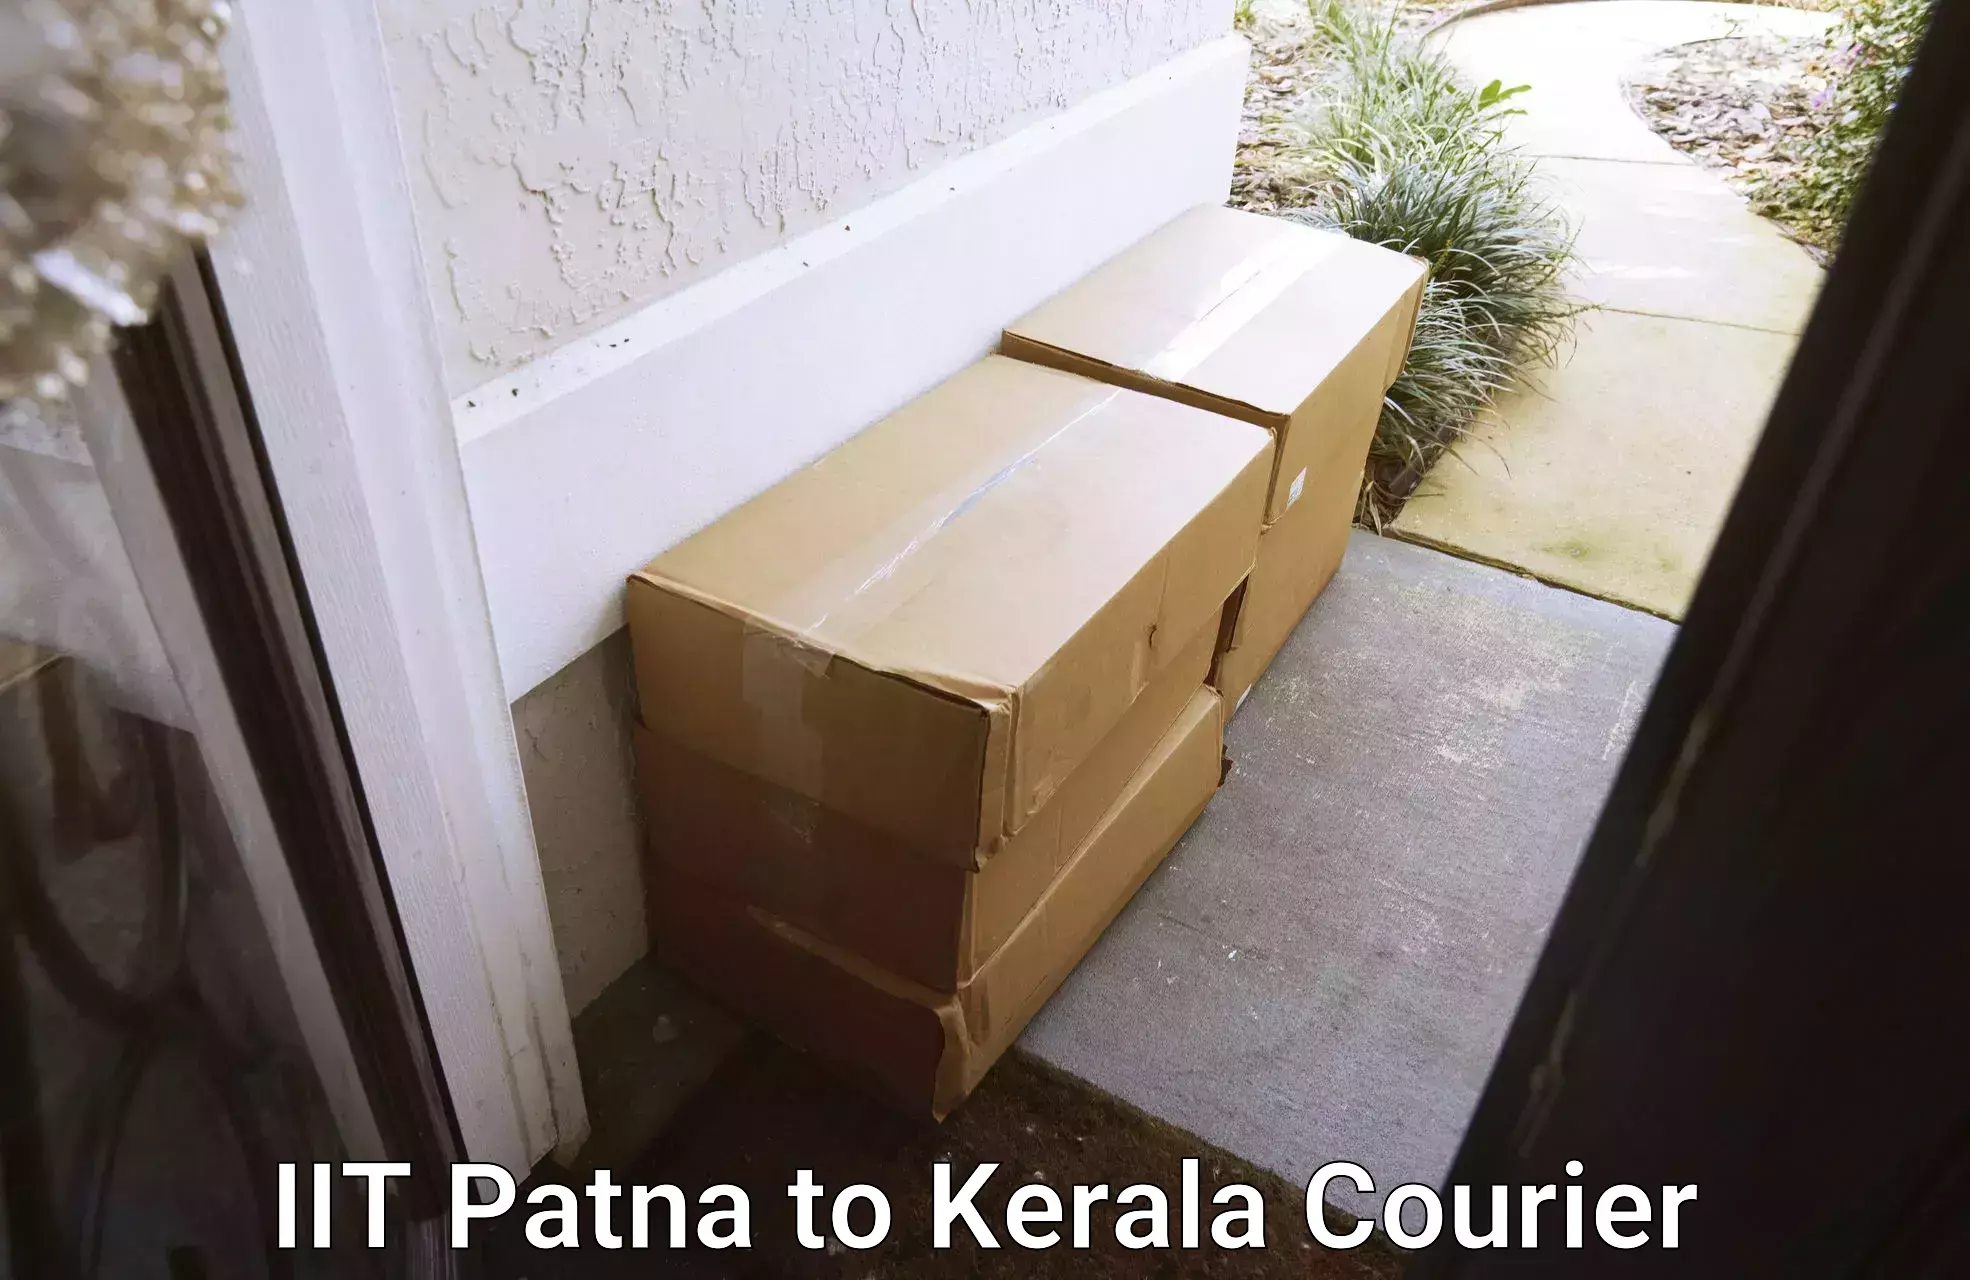 Home shifting services IIT Patna to Kerala